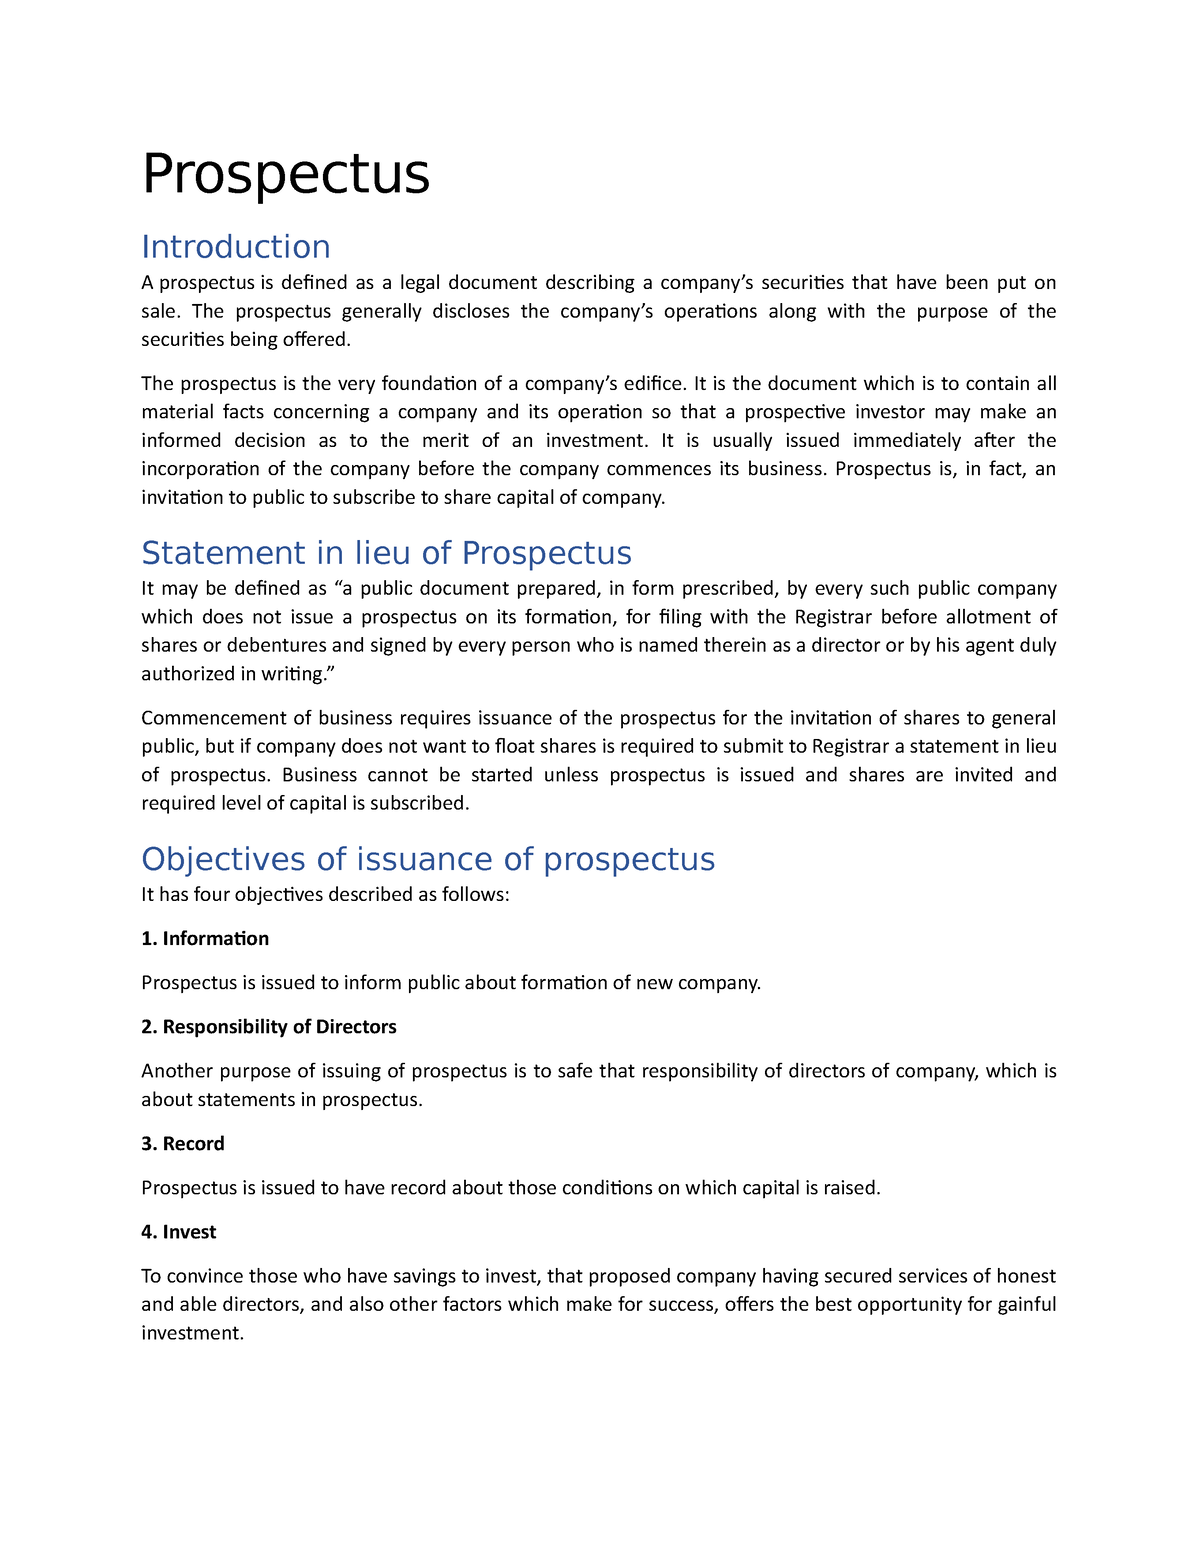 business prospectus purpose